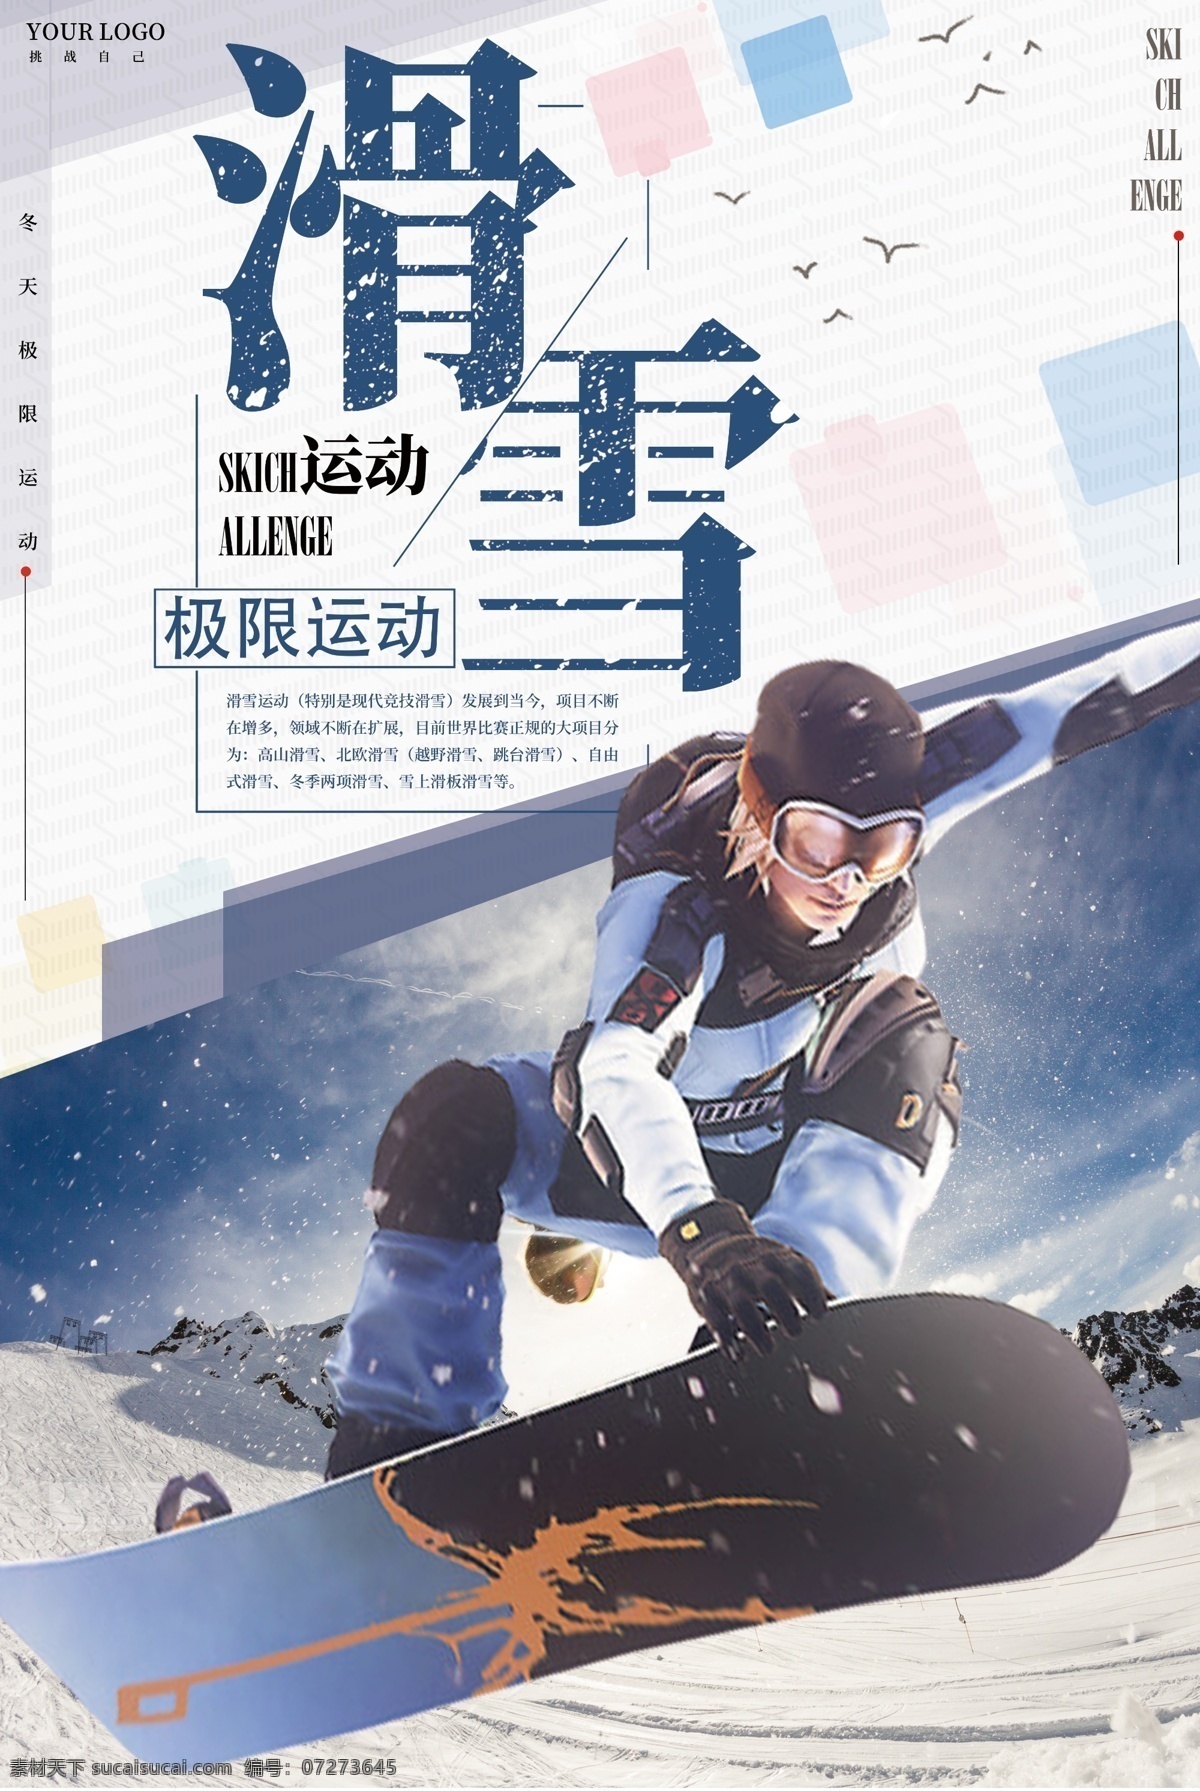 白色 简约 冬季 滑雪 海报 冬季海报 运动 运动海报 白色简约 冬季滑雪 滑雪海报 体育海报